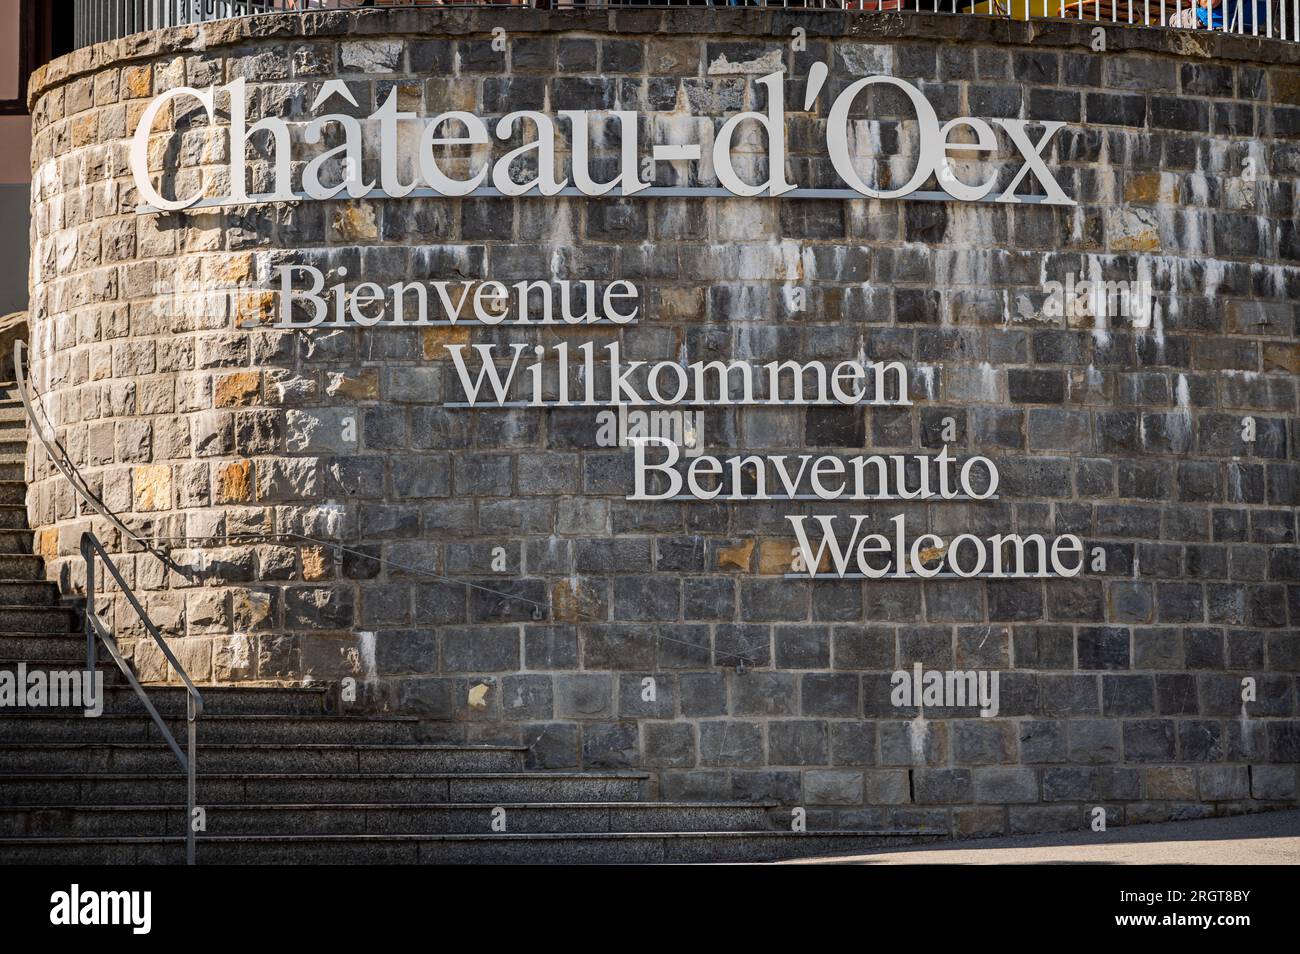 Chateau-d'Oex, Vaud Canton, Schweiz - 30. Juli 2023: Willkommen am Chateau-d'Oex-Schild. Begrüßungsnachrichten in vielen verschiedenen Sprachen, Fre Stockfoto